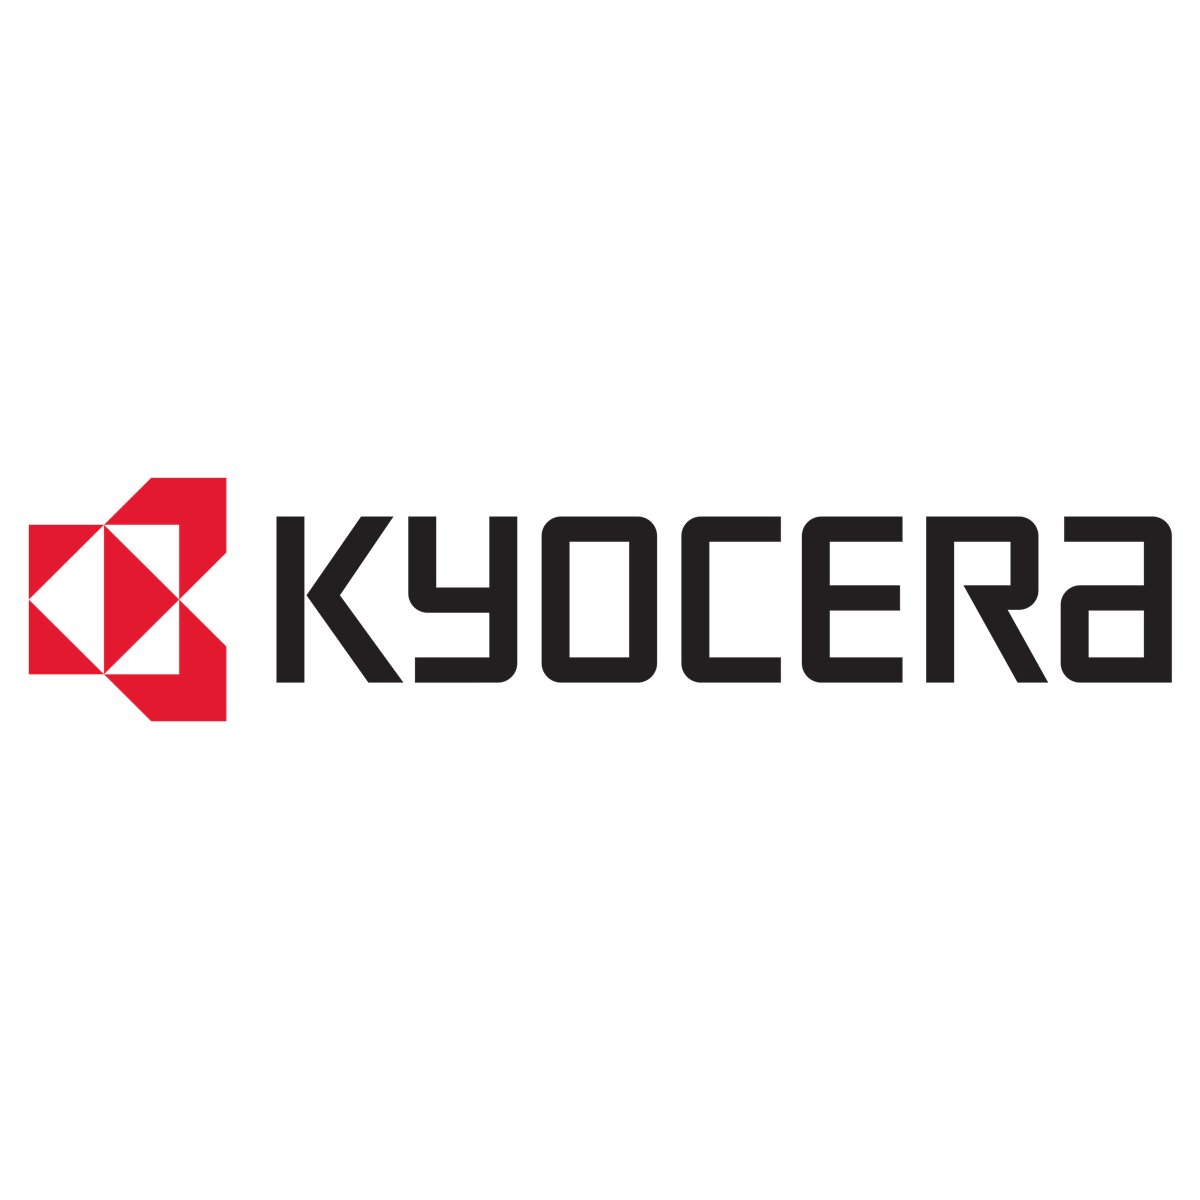 Kyocera FS400/600/680/800/1000/1000+/1010/1020D/1030/1050/1200/1700+/1750/1800/1800+/1900/370